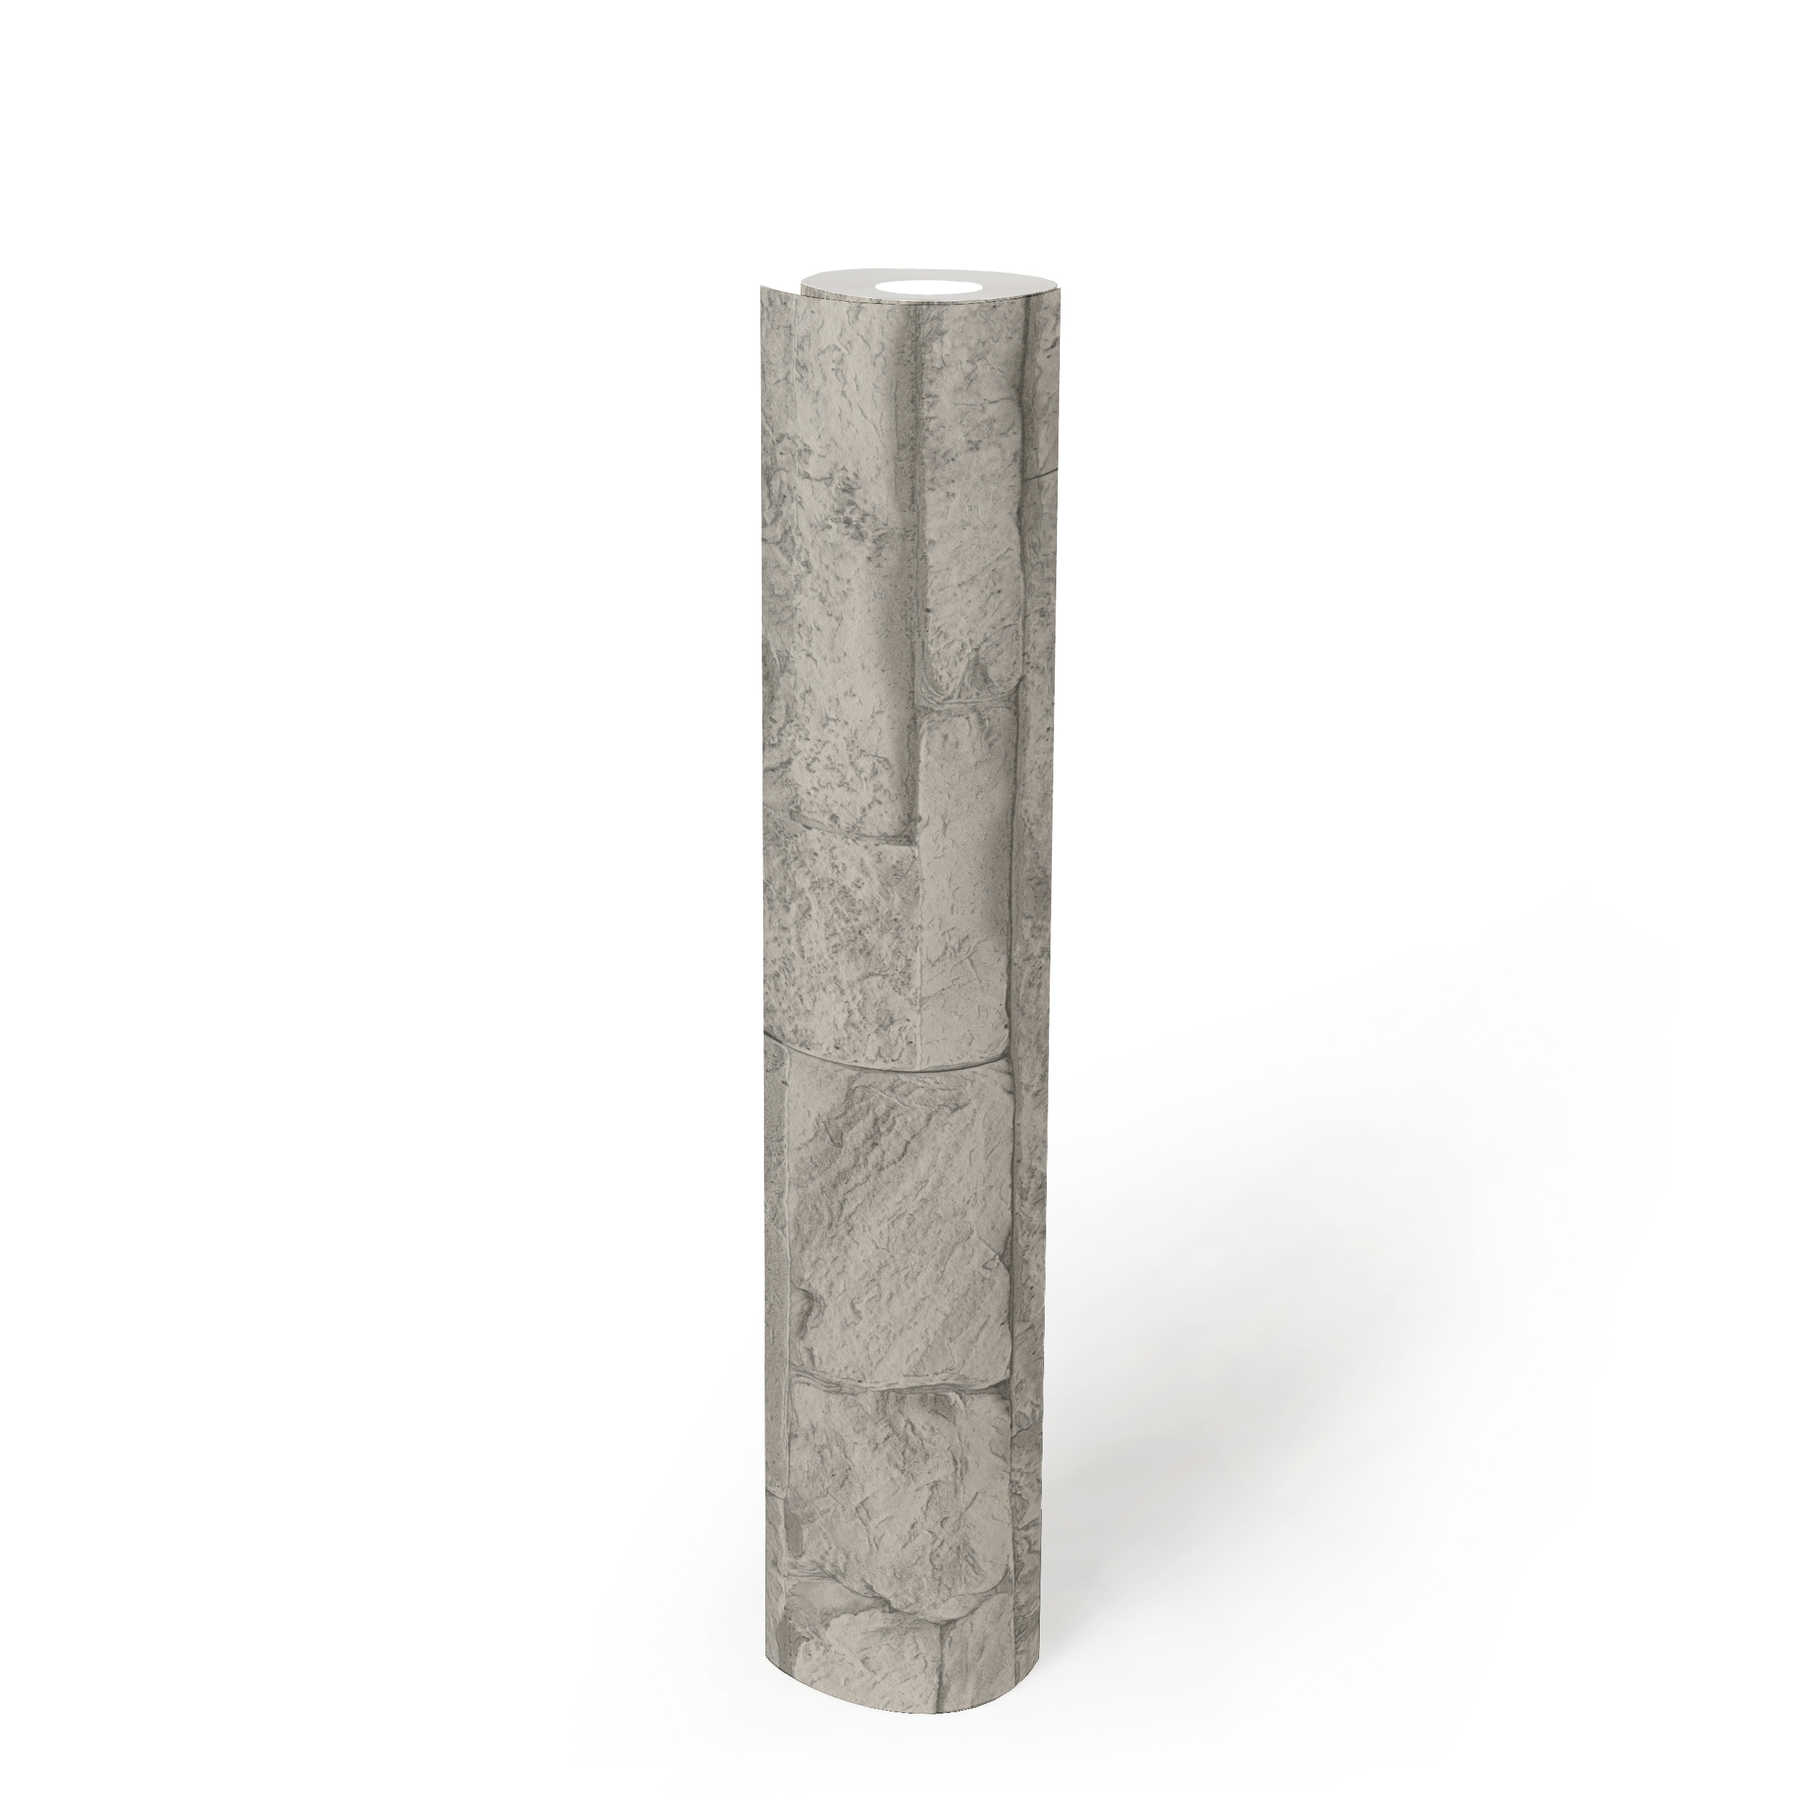             behang natuursteen look gedetailleerd & realistisch - grijs, wit
        